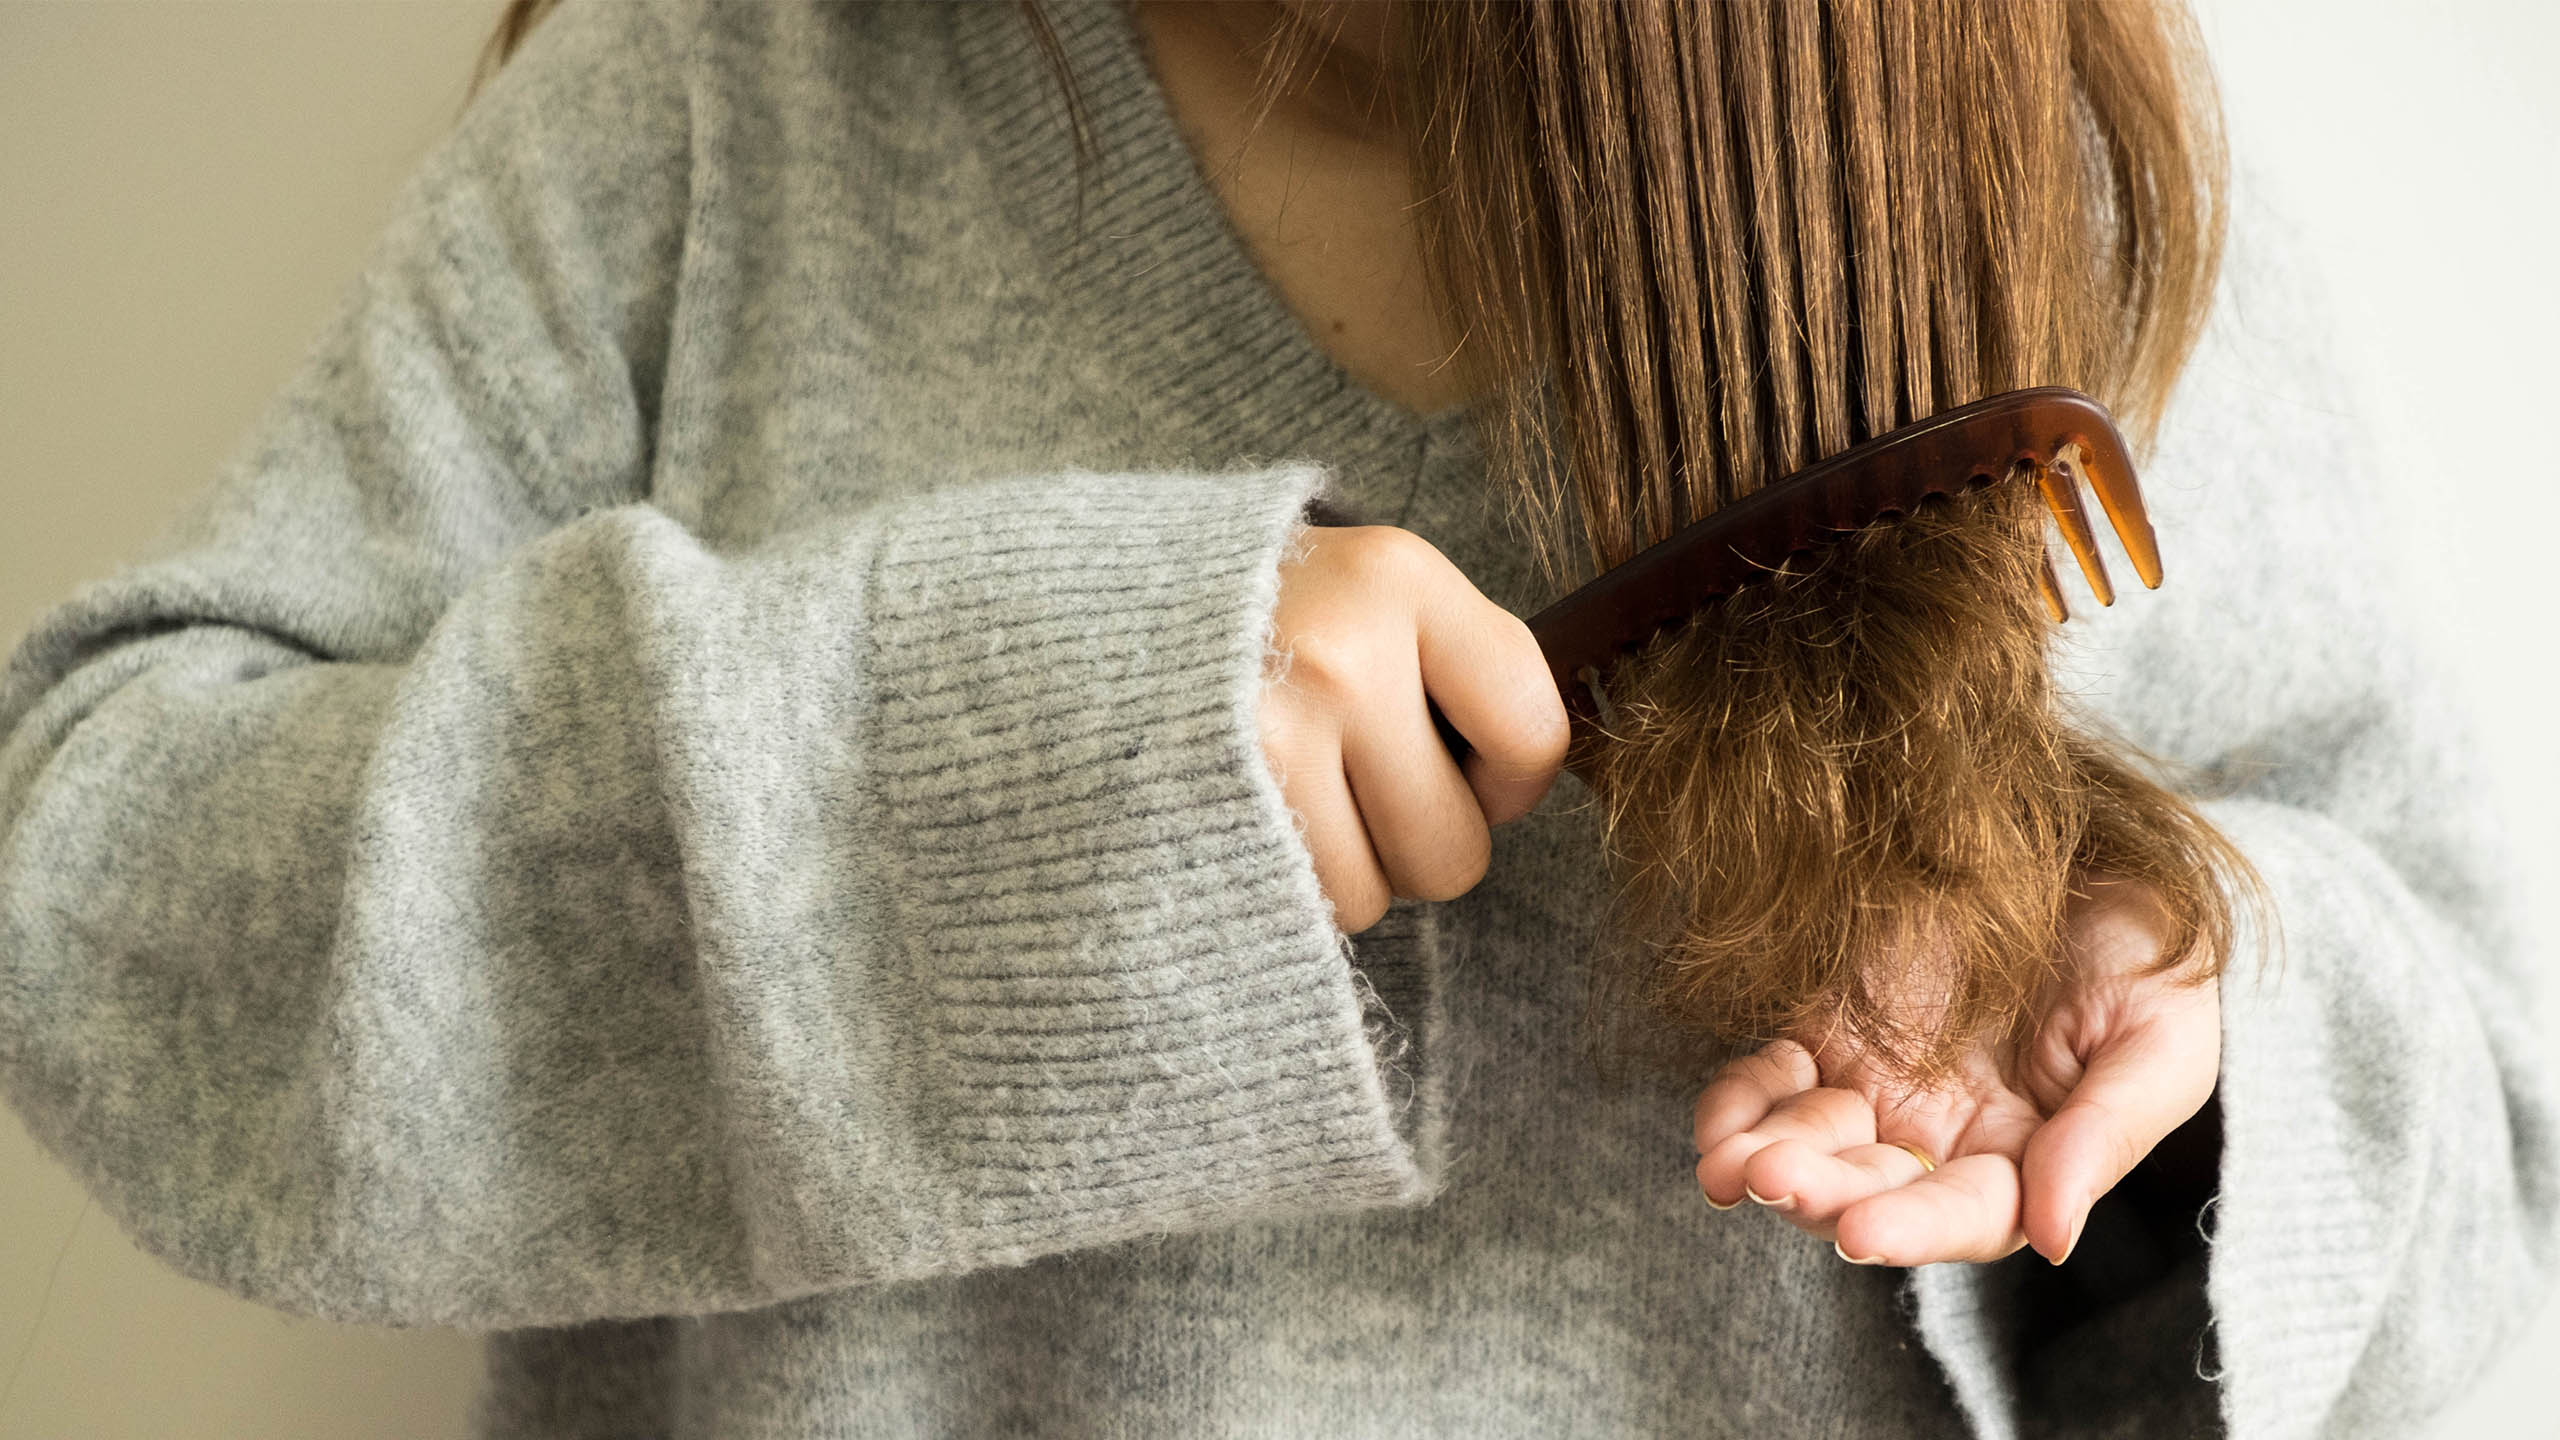 detalle de mujer peinando las puntas del pelo duro